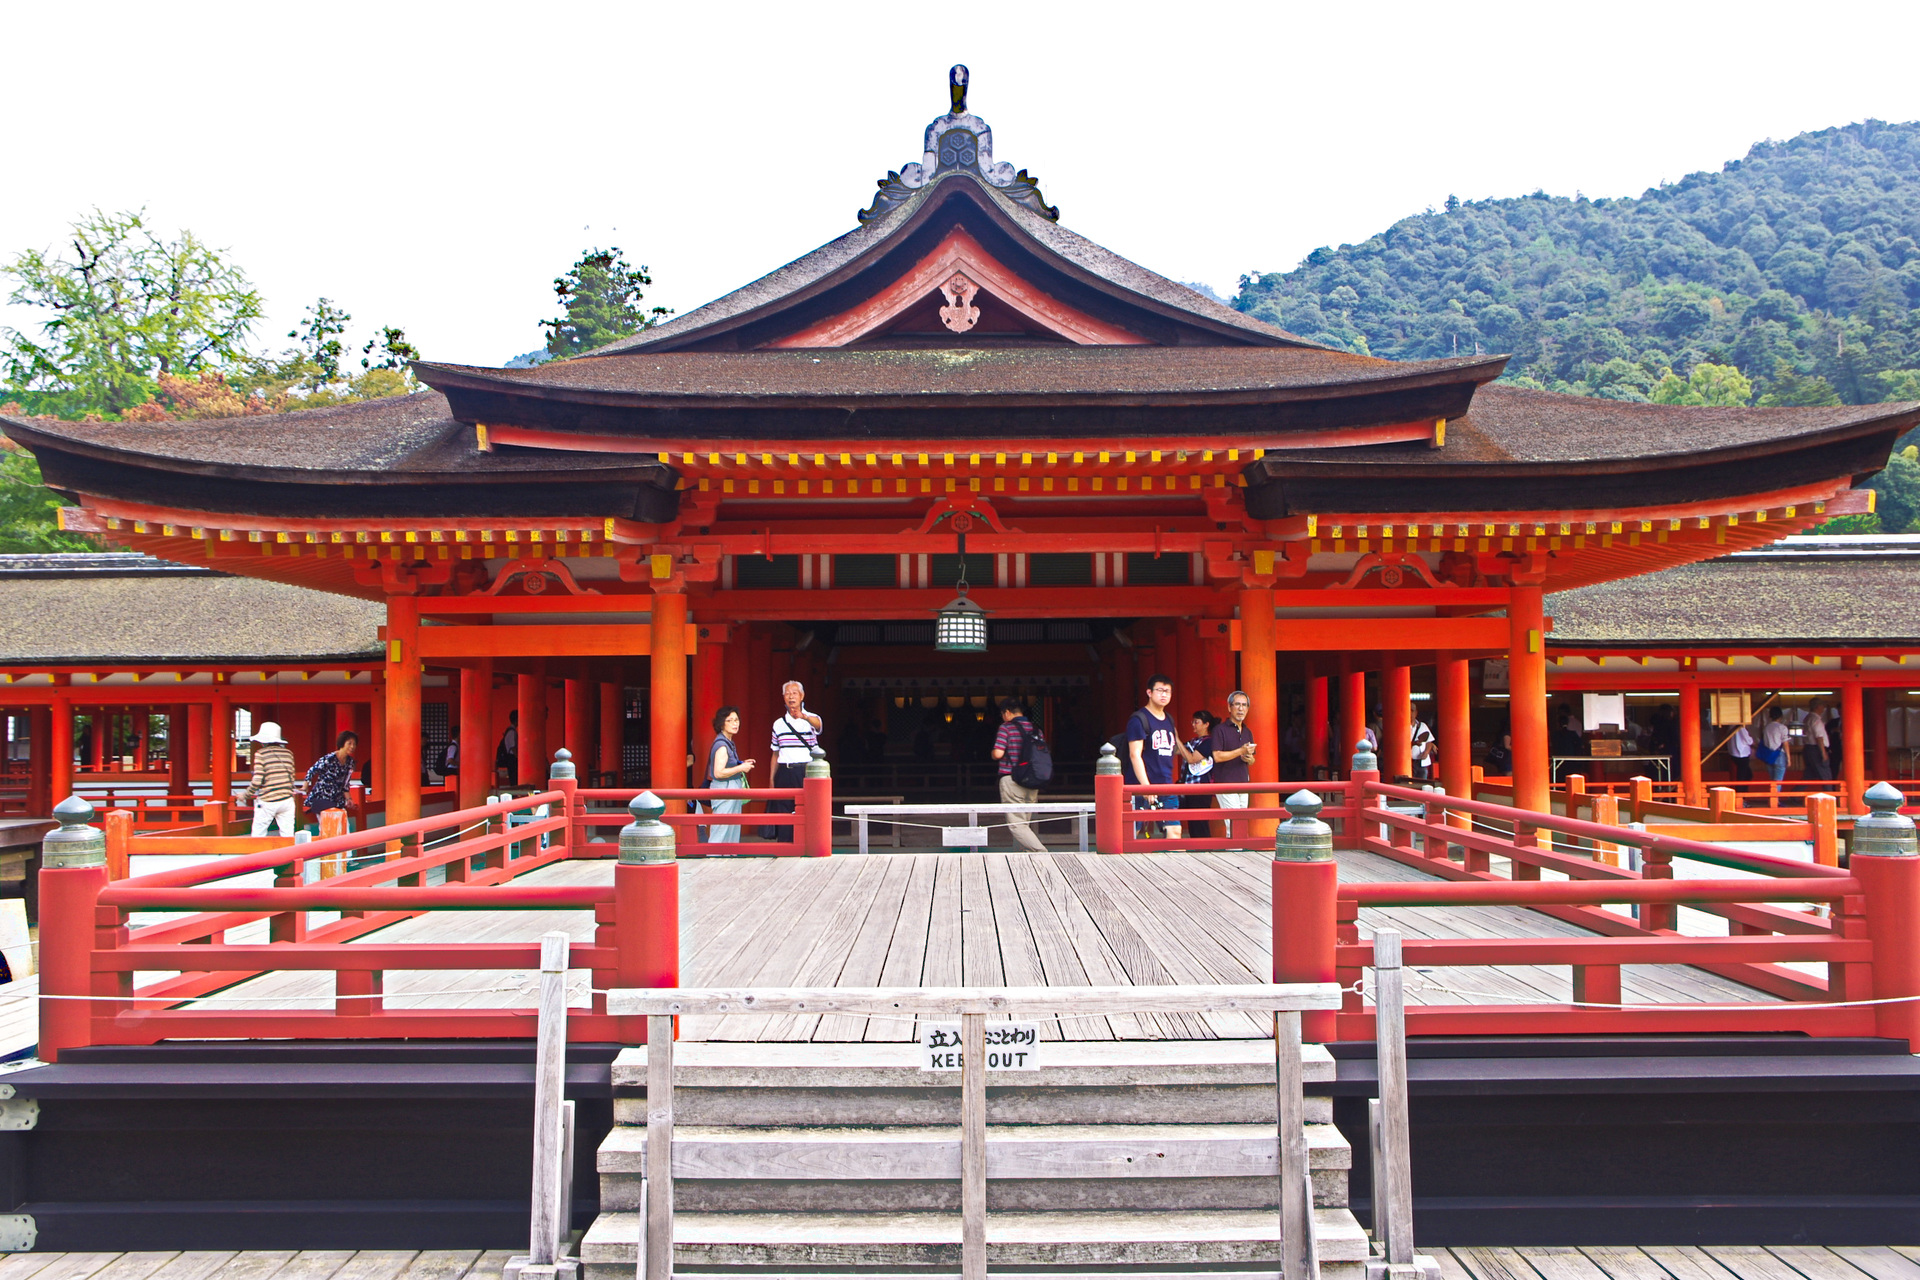 最も人気のある 厳島 神社 壁紙 壁紙画像のベストセレクション